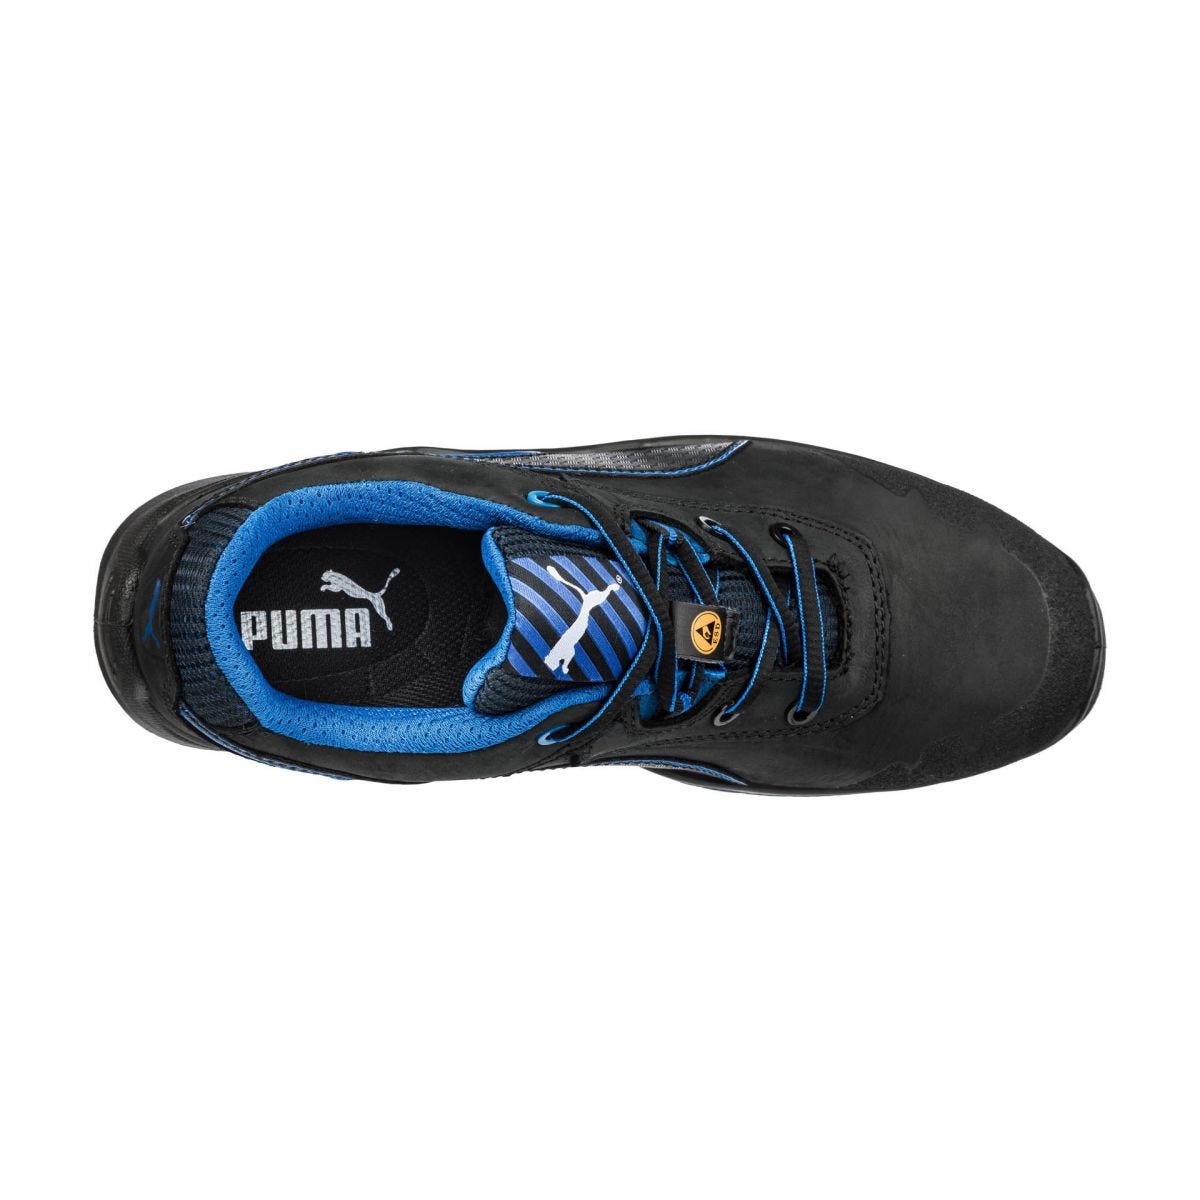 Chaussures de sécurité Argon RX low S3 ESD SRC bleu - Puma - Taille 45 2